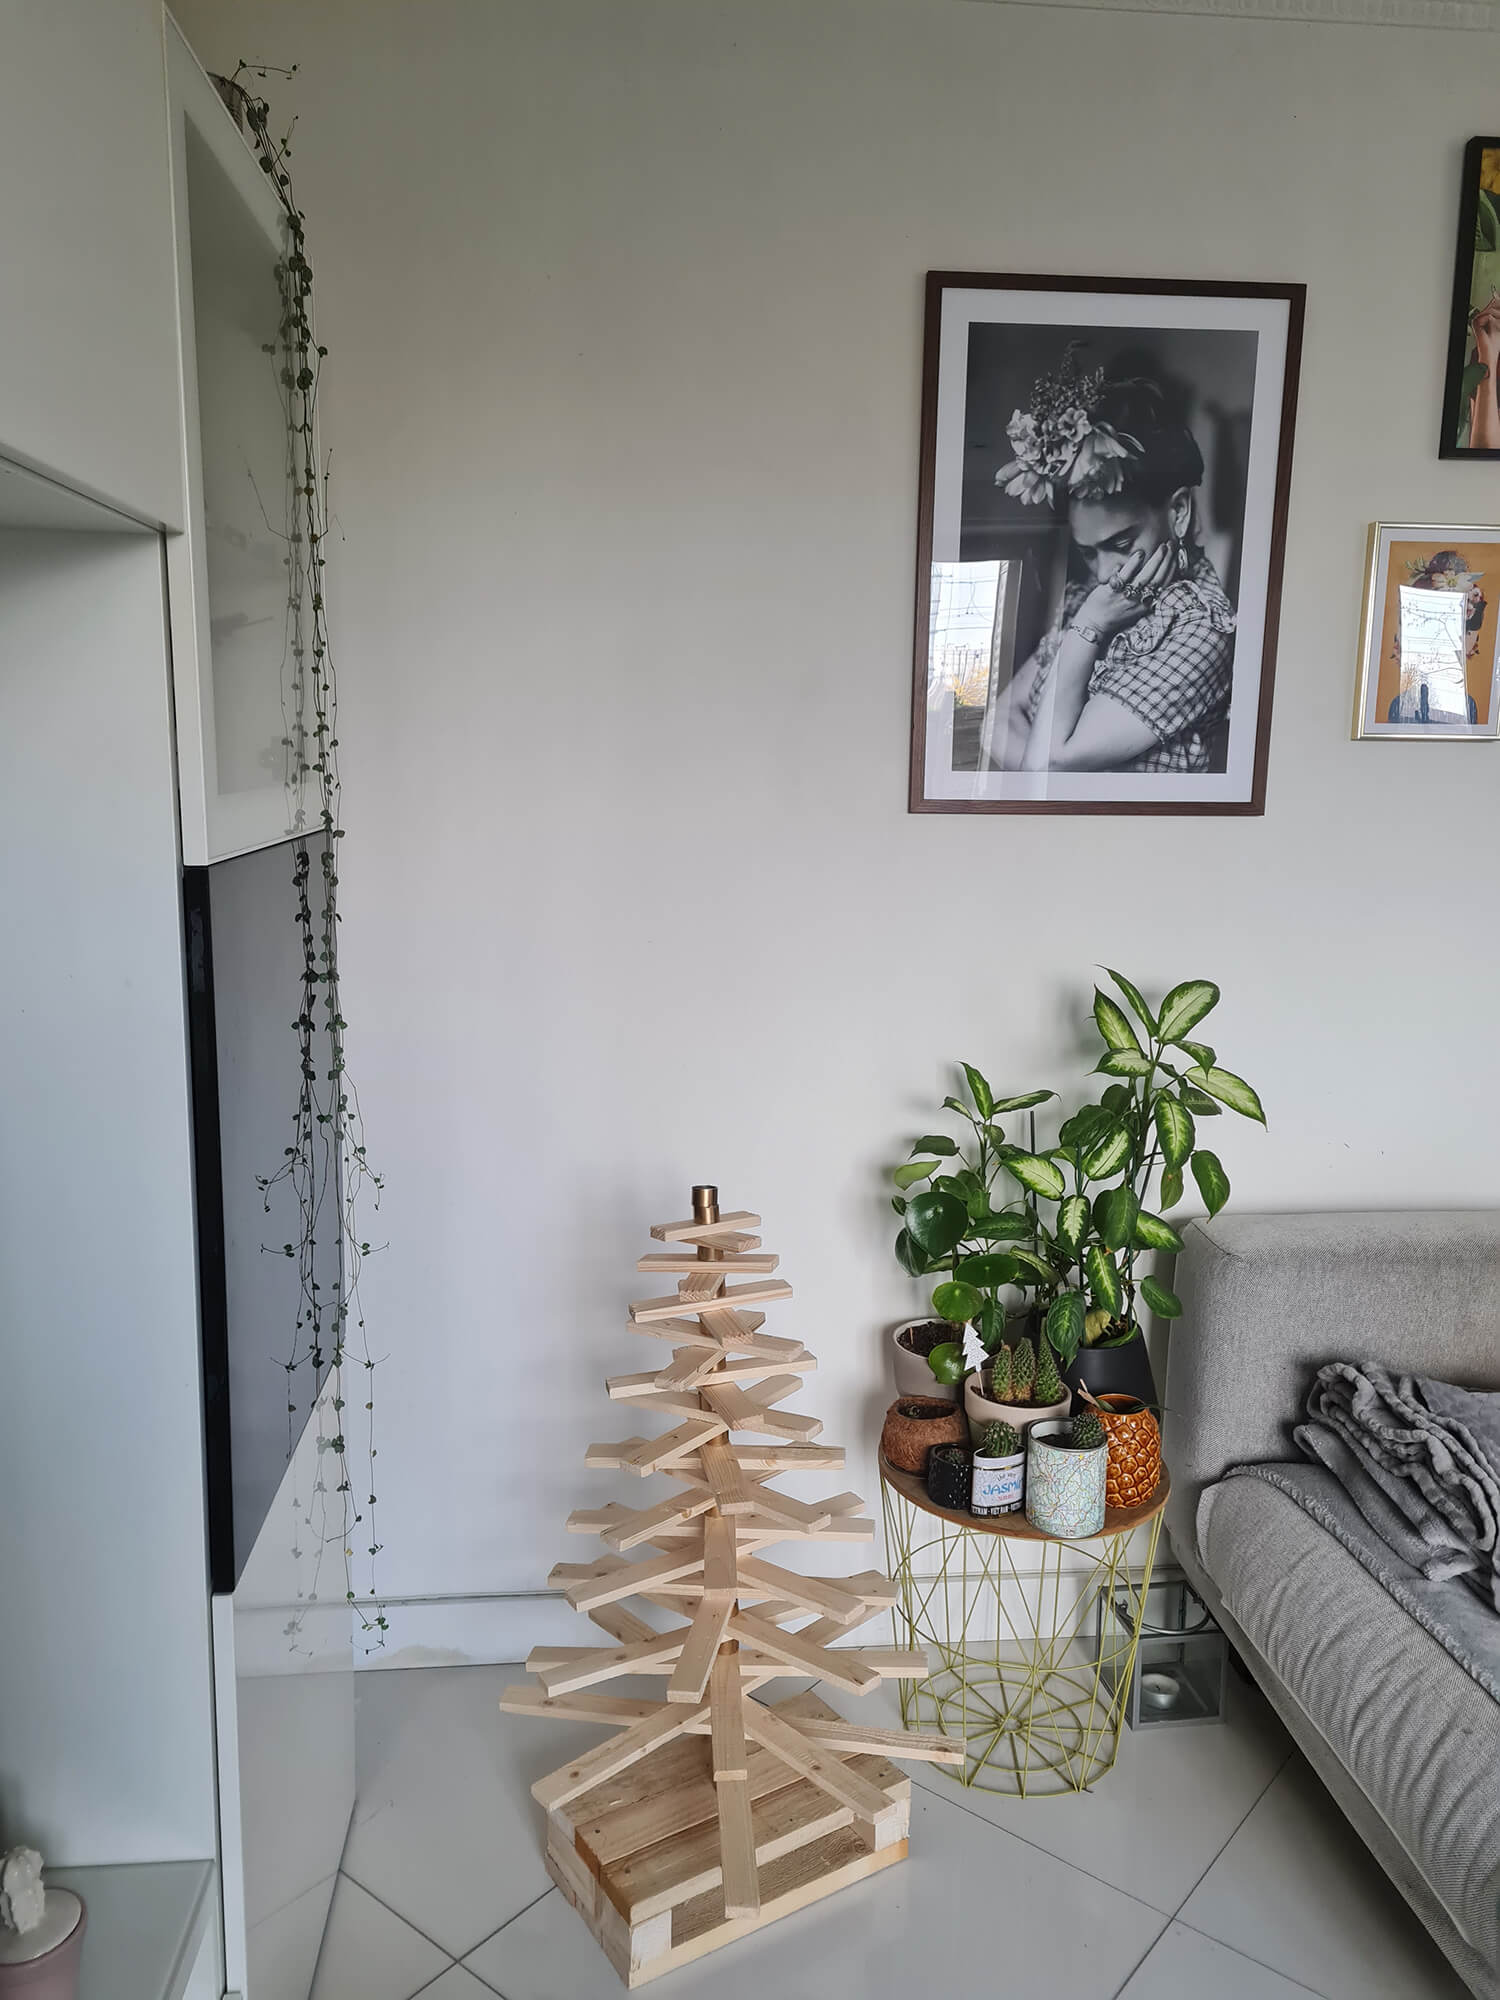 20201208 131521 - DIY récup : fabriquer un sapin de Noël en bois avec des tasseaux